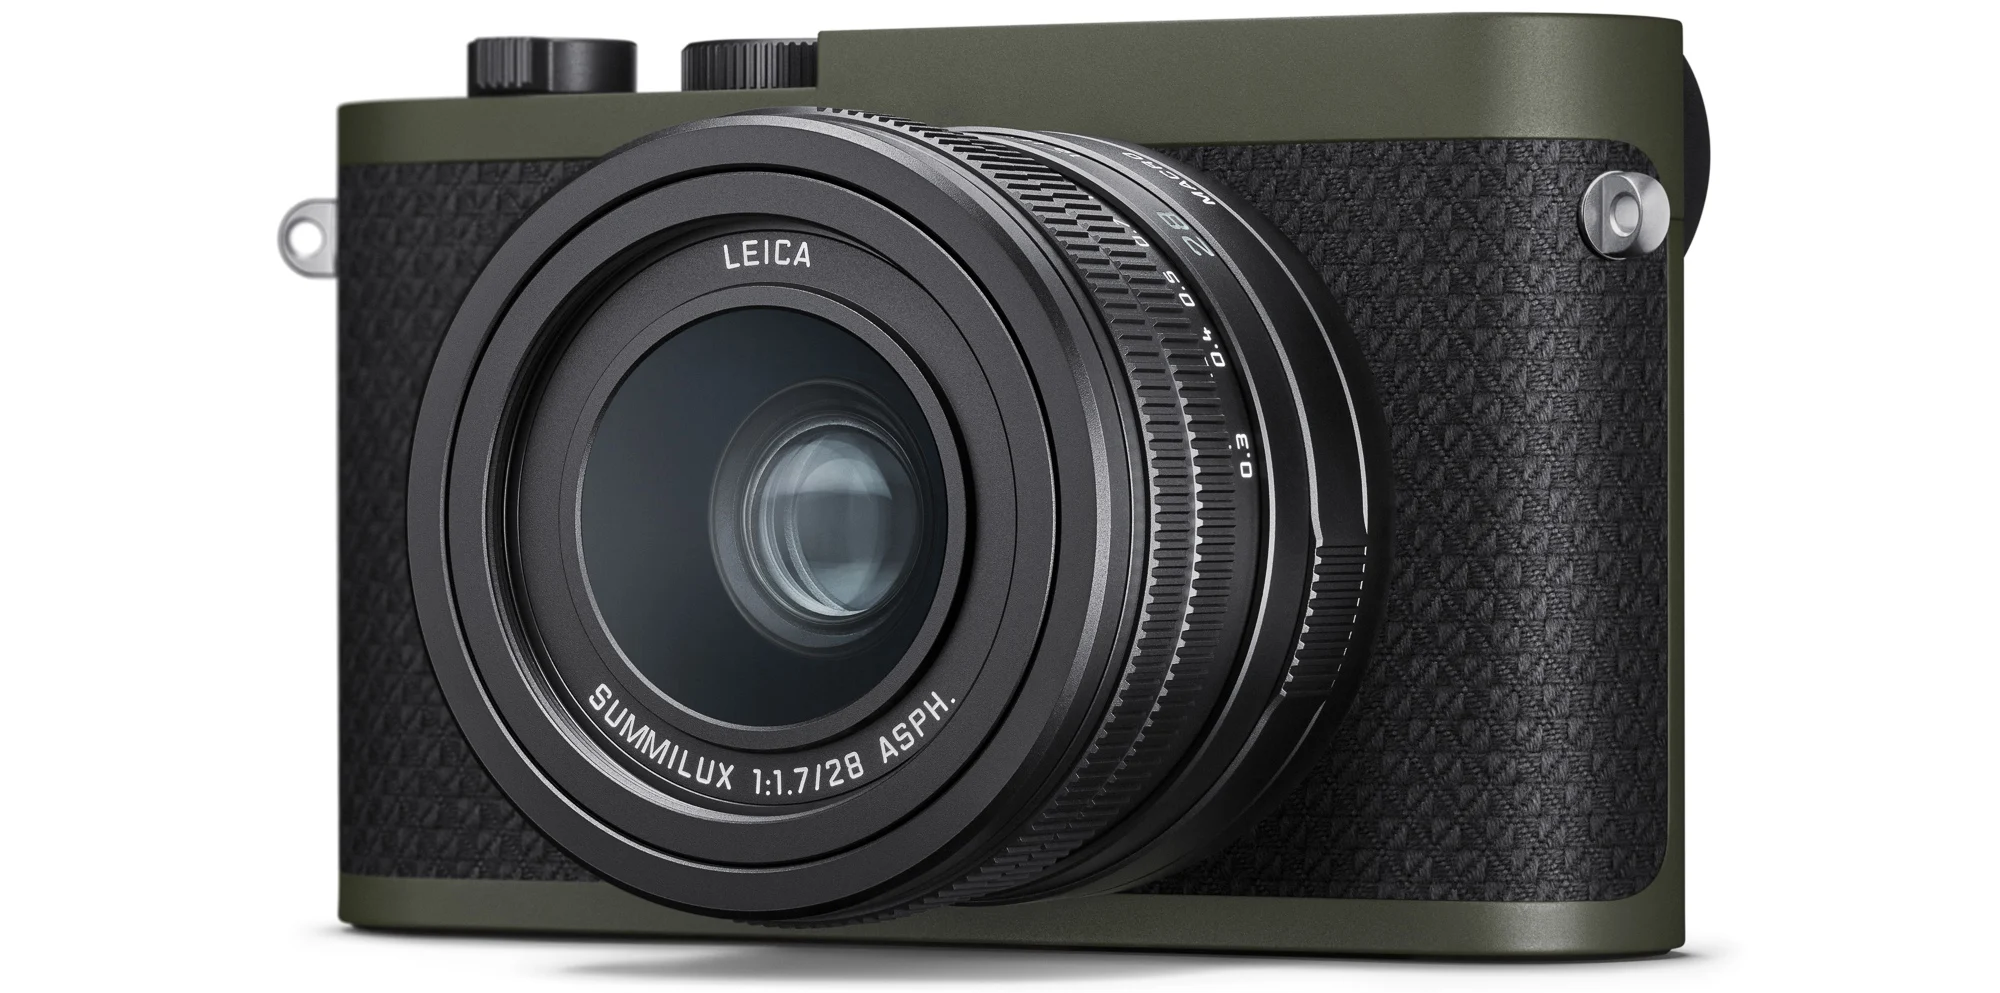 Leica giới thiệu phiên bản Q2 Reporter mới được bọc lớp vỏ Kevlar chống đạn